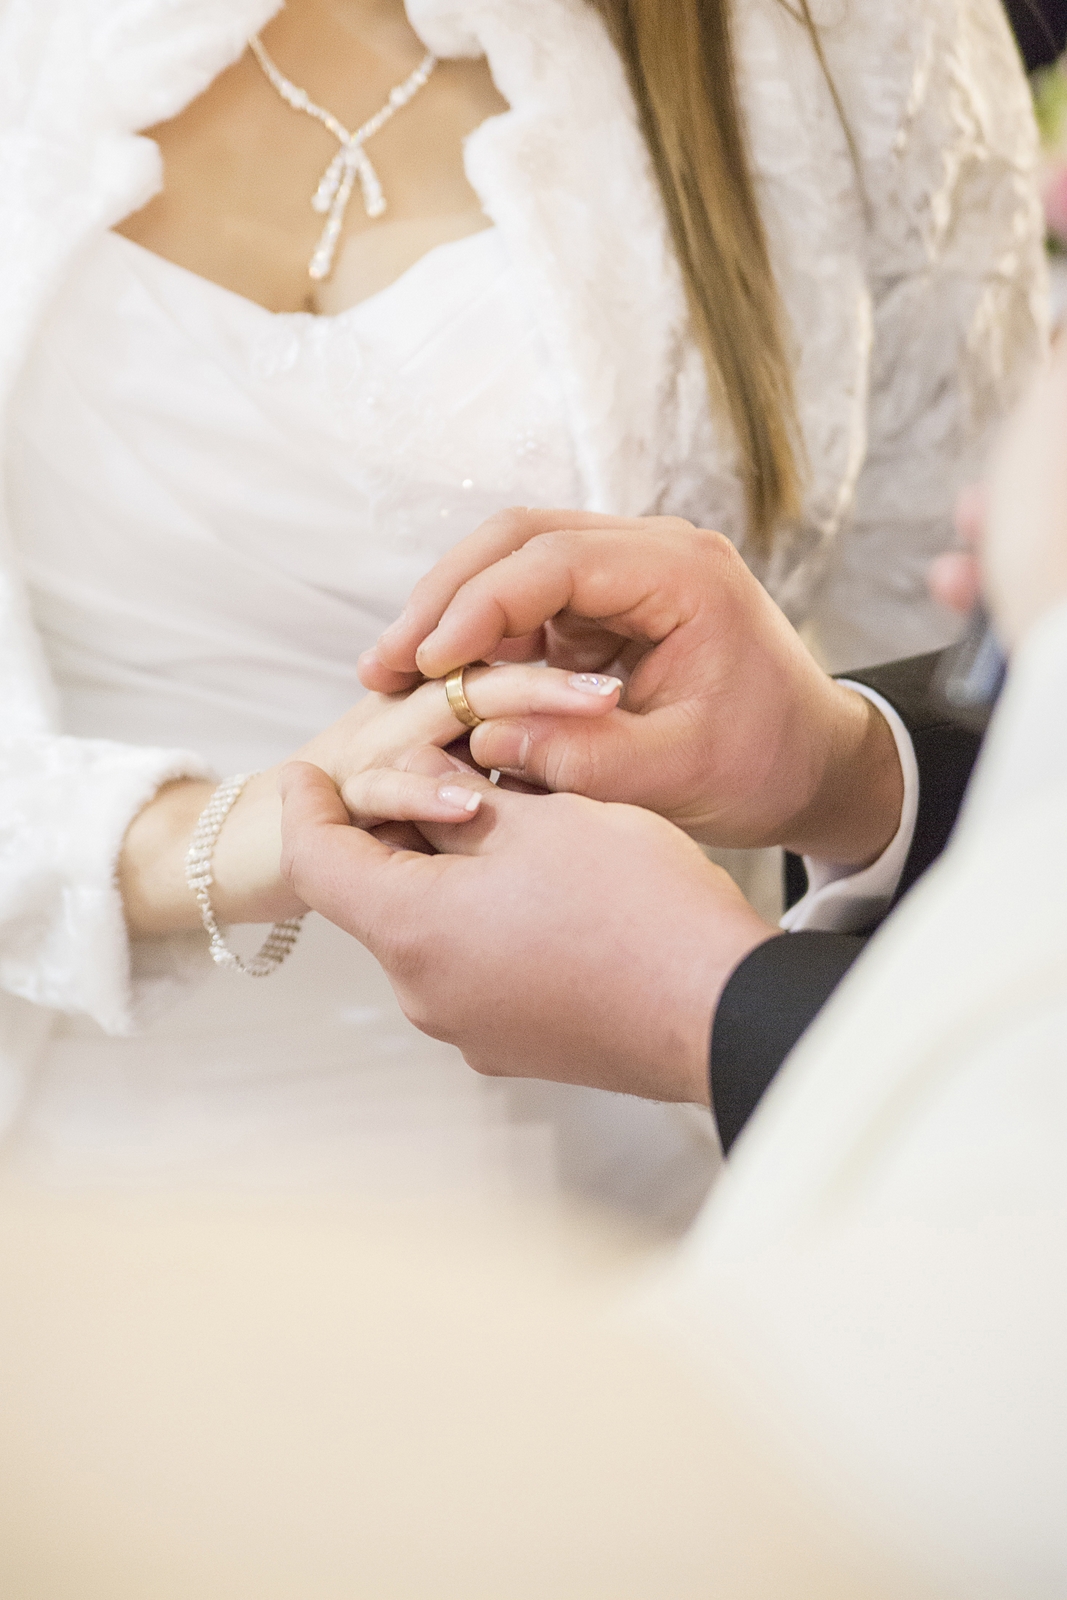 Zdjęcie zakładania obrączek podczas ceremoni ślubu